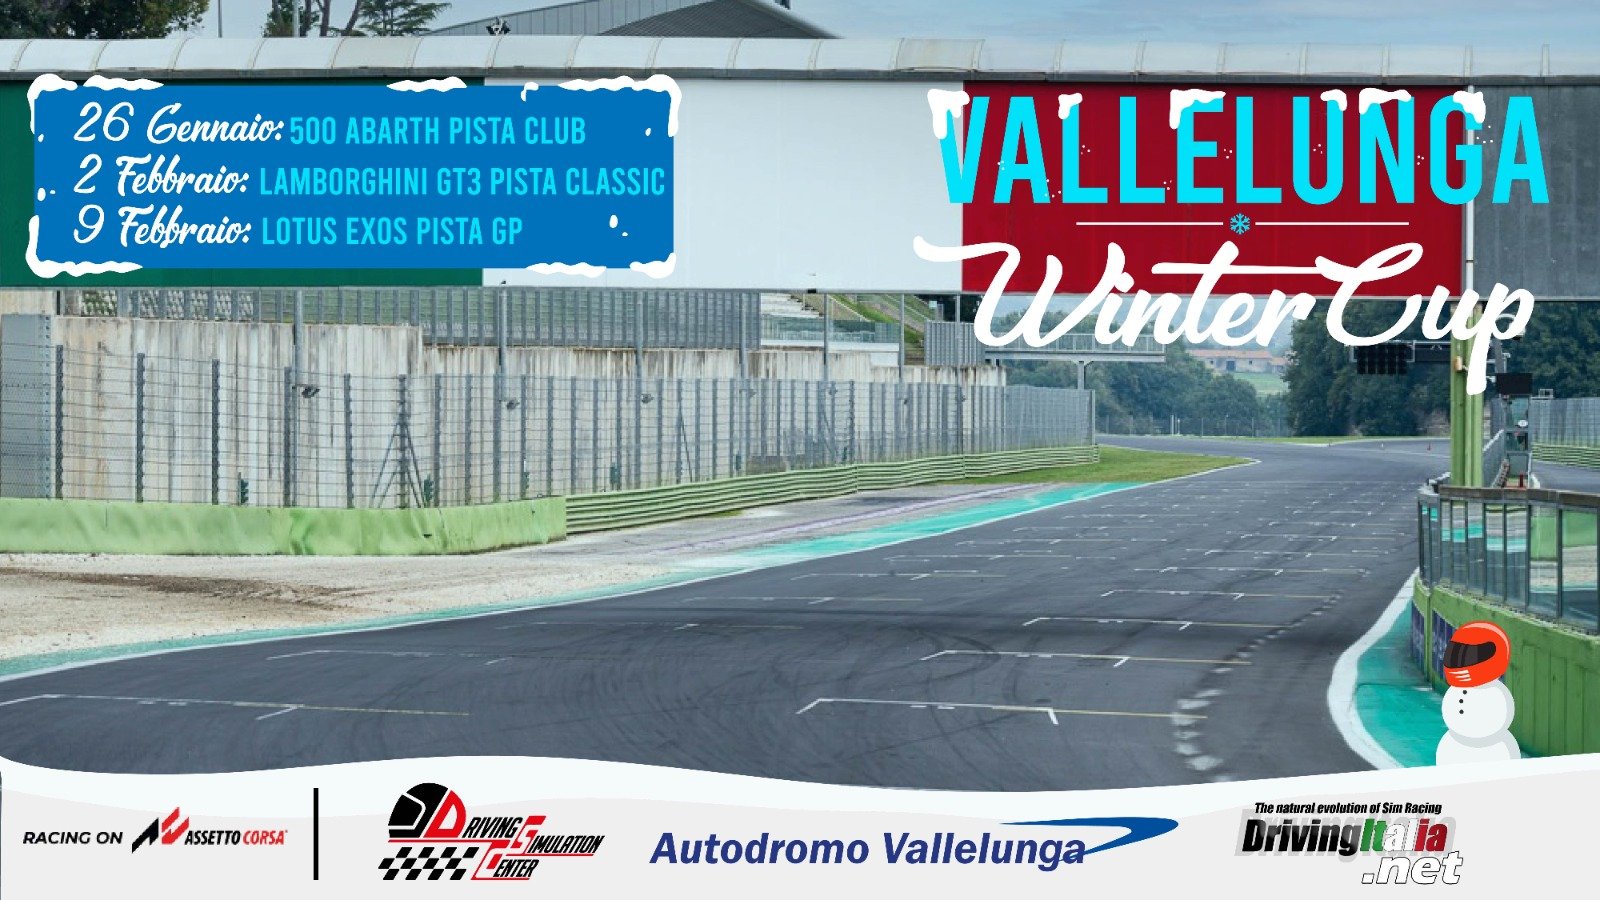 More information about "Vallelunga Winter Cup con Assetto Corsa: mercoledi 26 il round 1 con le 500 Abarth"